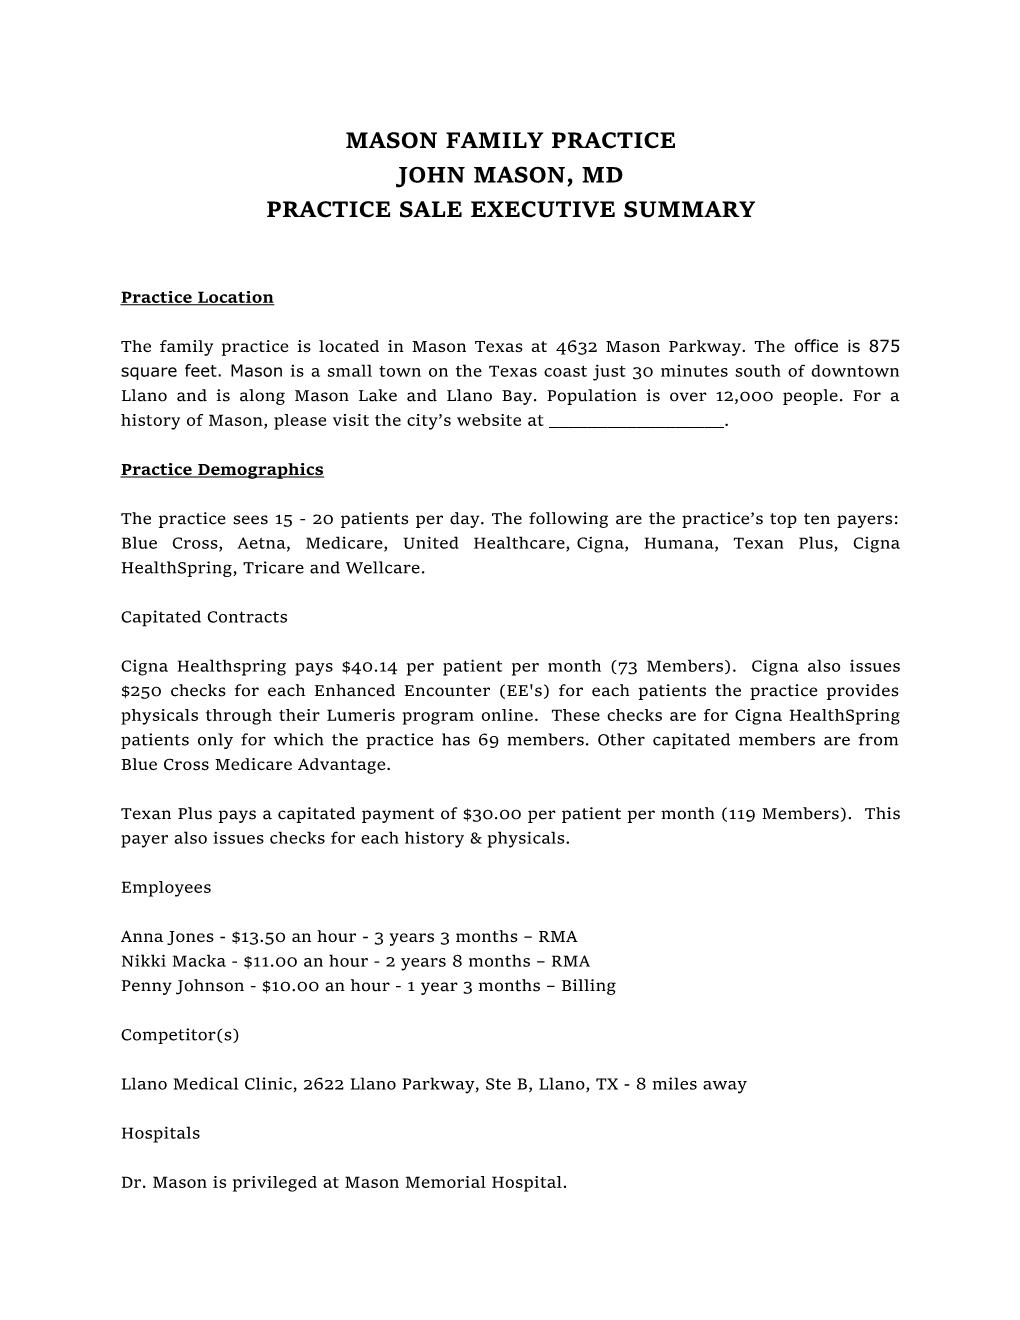 Practice Sale Executive Summary